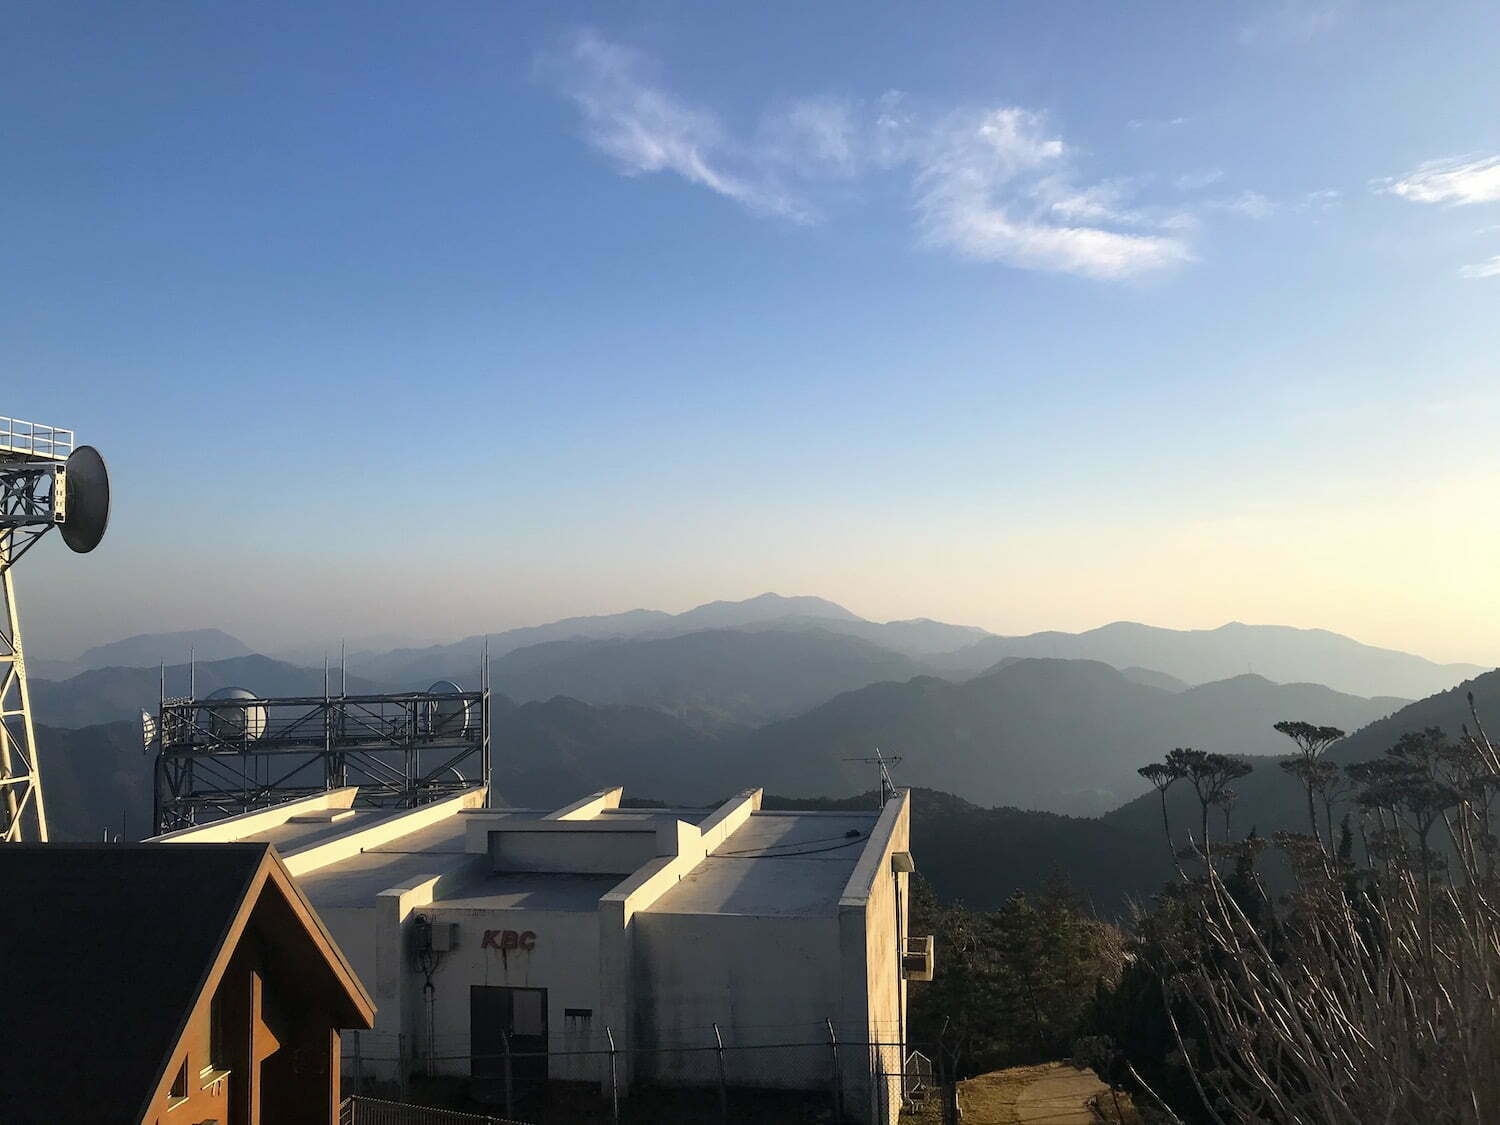 The view from Mt. Sarakura